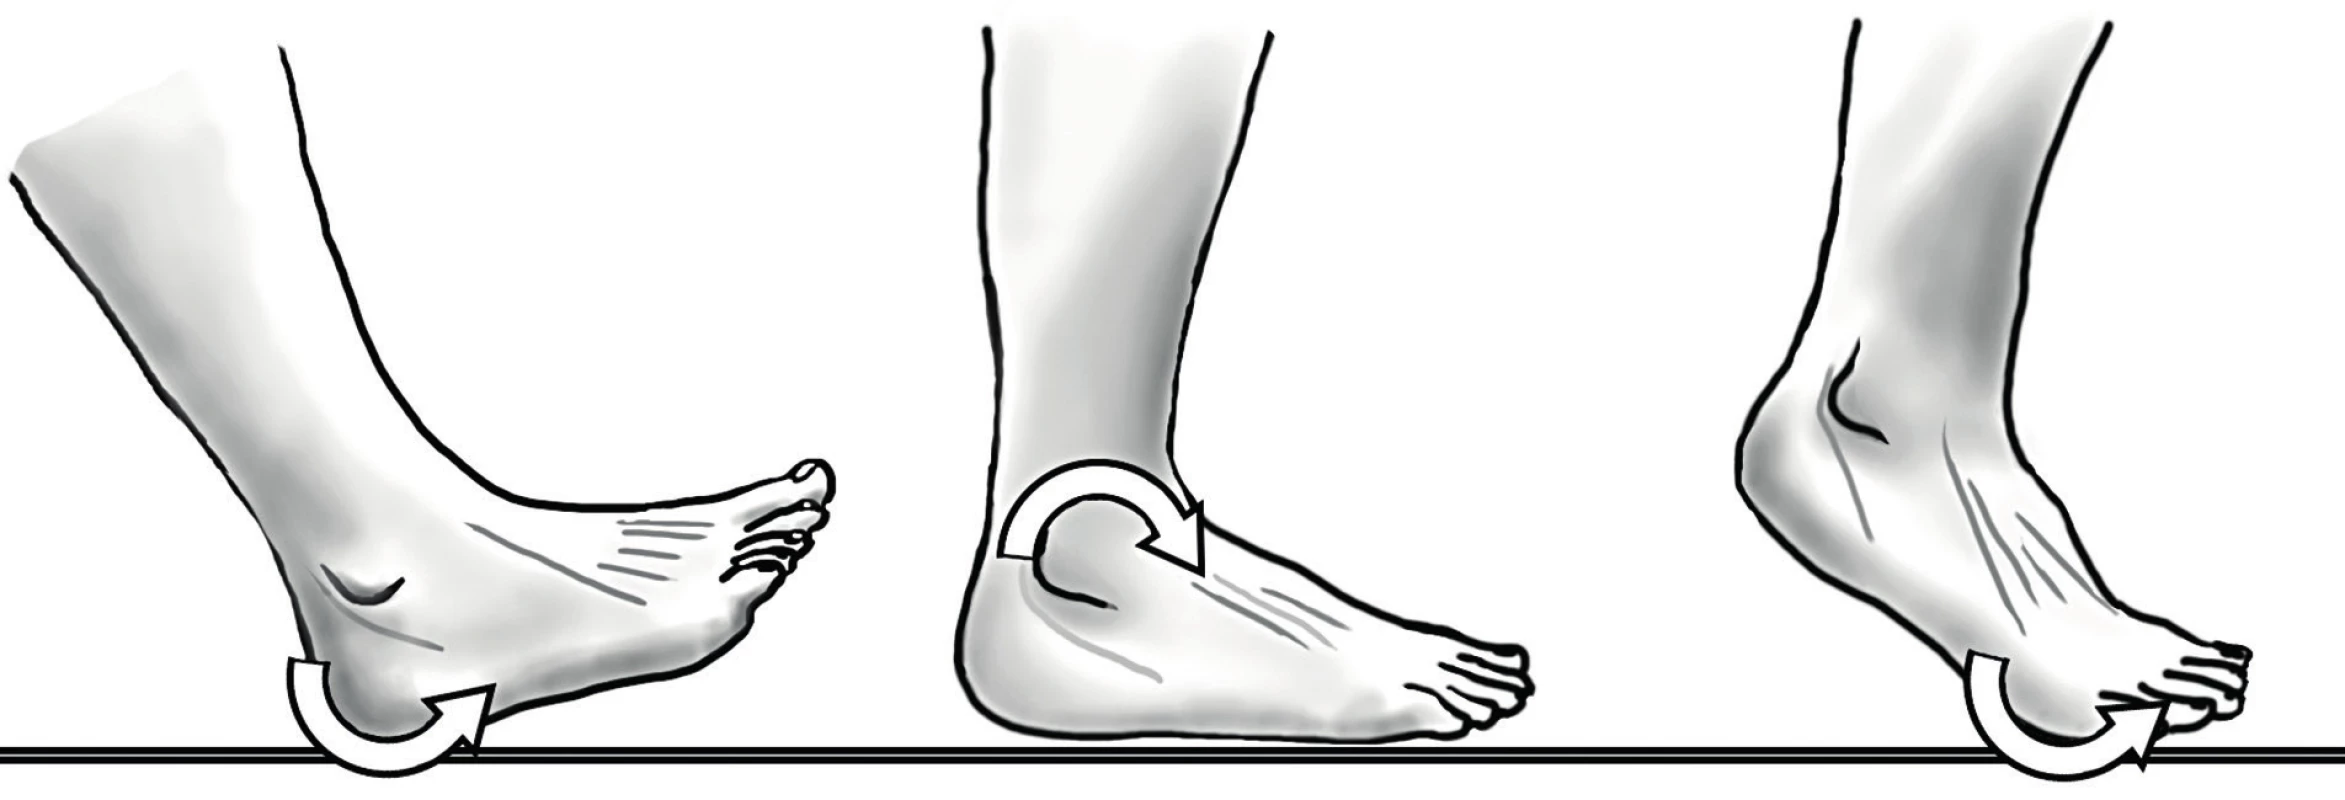 Model tří kolébek („rockers“) krokového cyklu; první zhoupnutí (patní) – dopad paty při úvodním kontaktu s podložkou; druhé (hlezenní) zhoupnutí – noha je zatížením fixována k podložce, bérec se vzhledem k ní posunuje vpřed; třetí zhoupnutí (kolem hlaviček MTT) – bérec se i nadále pohybuje vpřed, zvedá se pata, dochází k dorzální flexi přednoží a plantární flexi v hleznu.